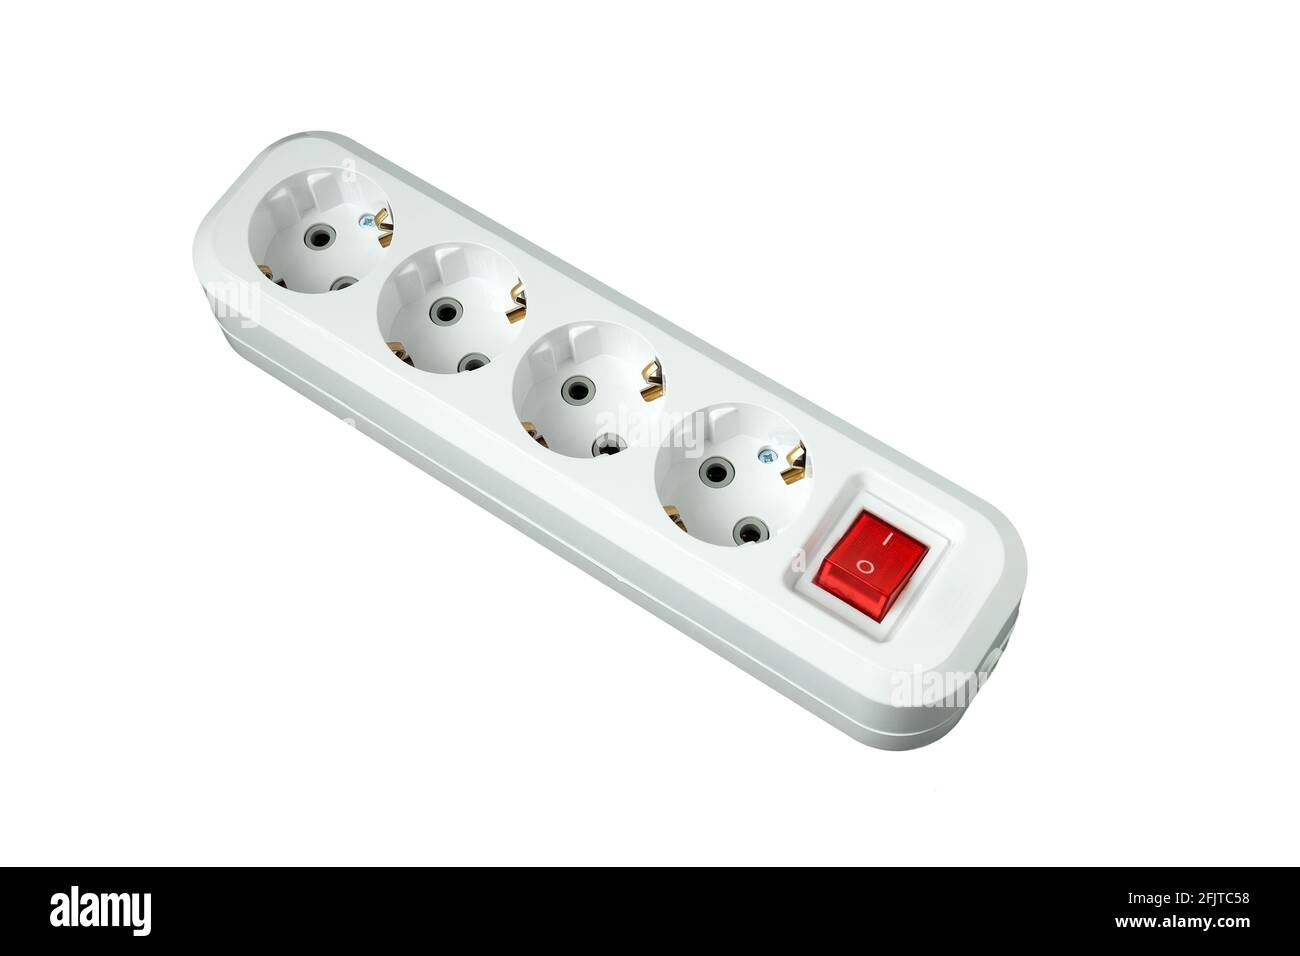 Il s'agit d'un répartiteur électrique pour quatre prises avec un bouton d'alimentation. Isolé sur un fond blanc. Parasurtenseur blanc avec bouton rouge. Banque D'Images